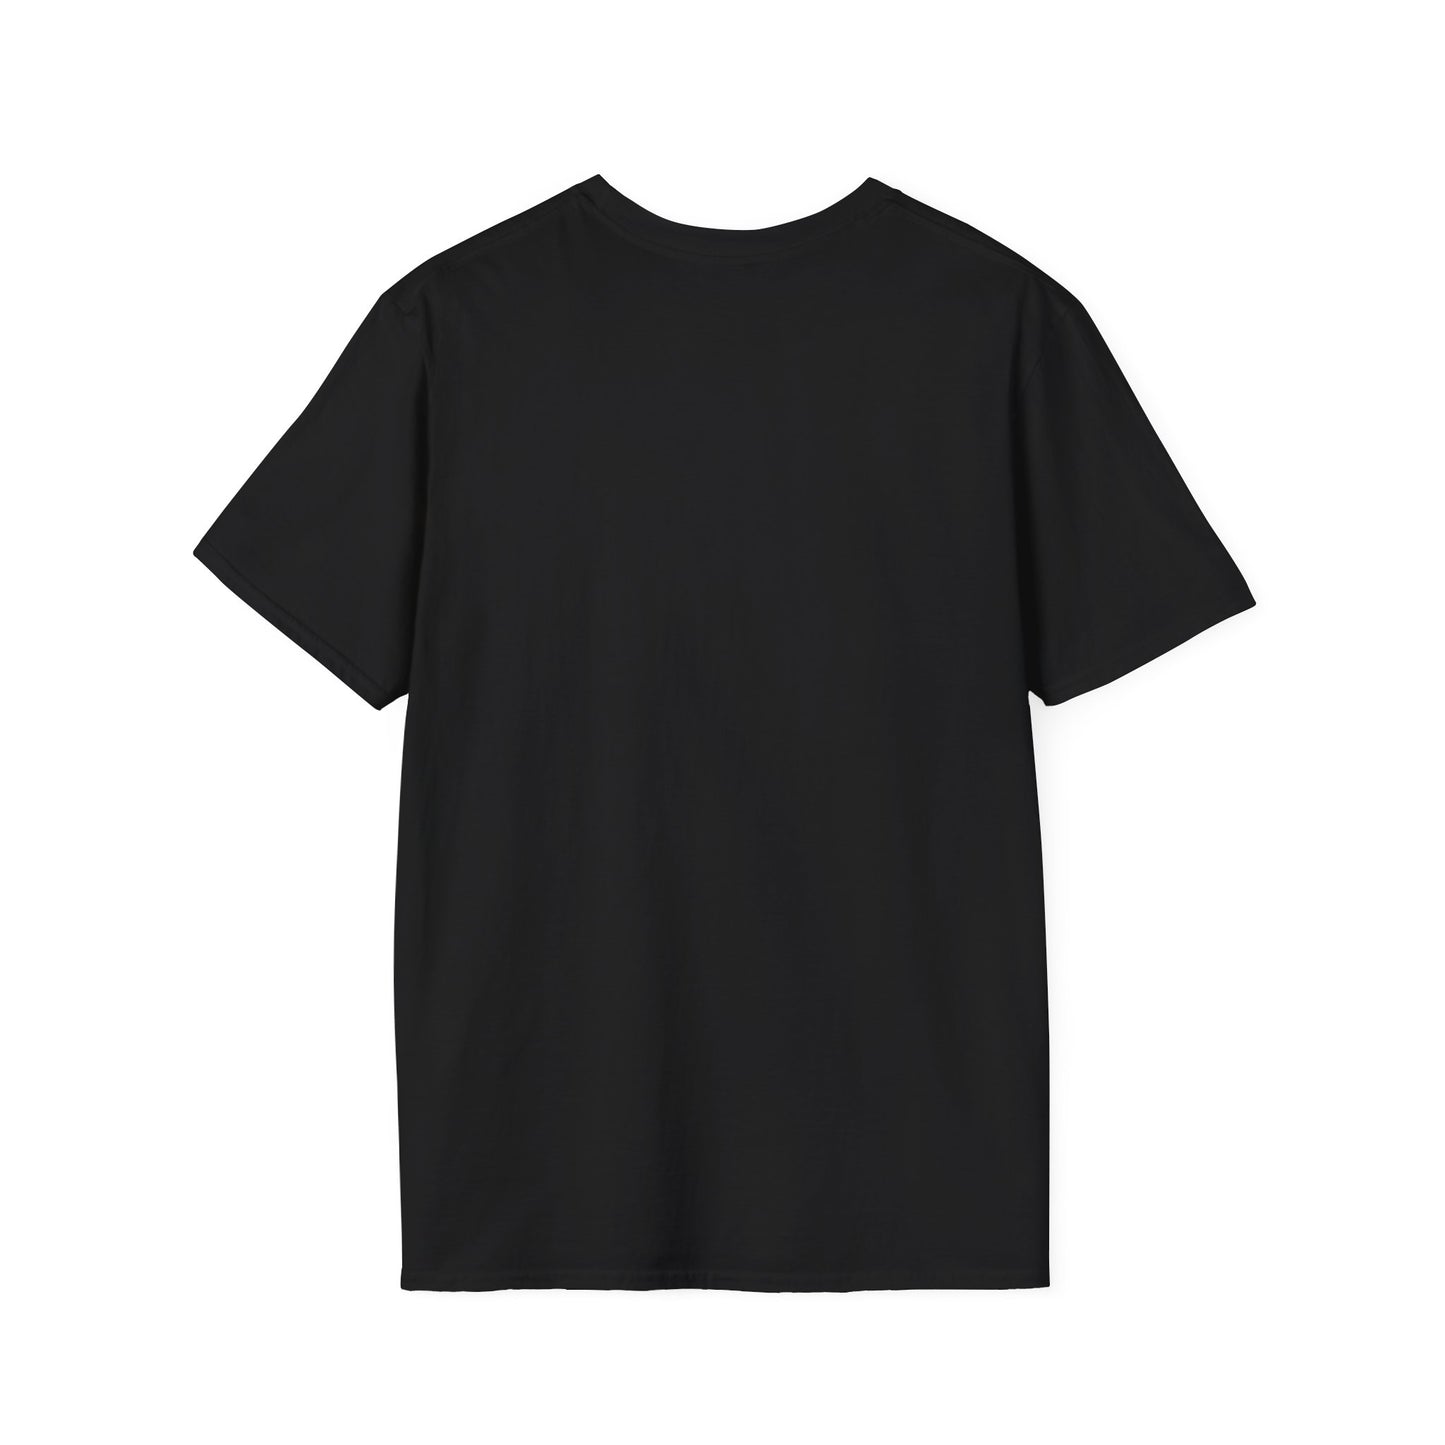 B6 MX-5 Engine Graphic Unisex Softstyle T-Shirt